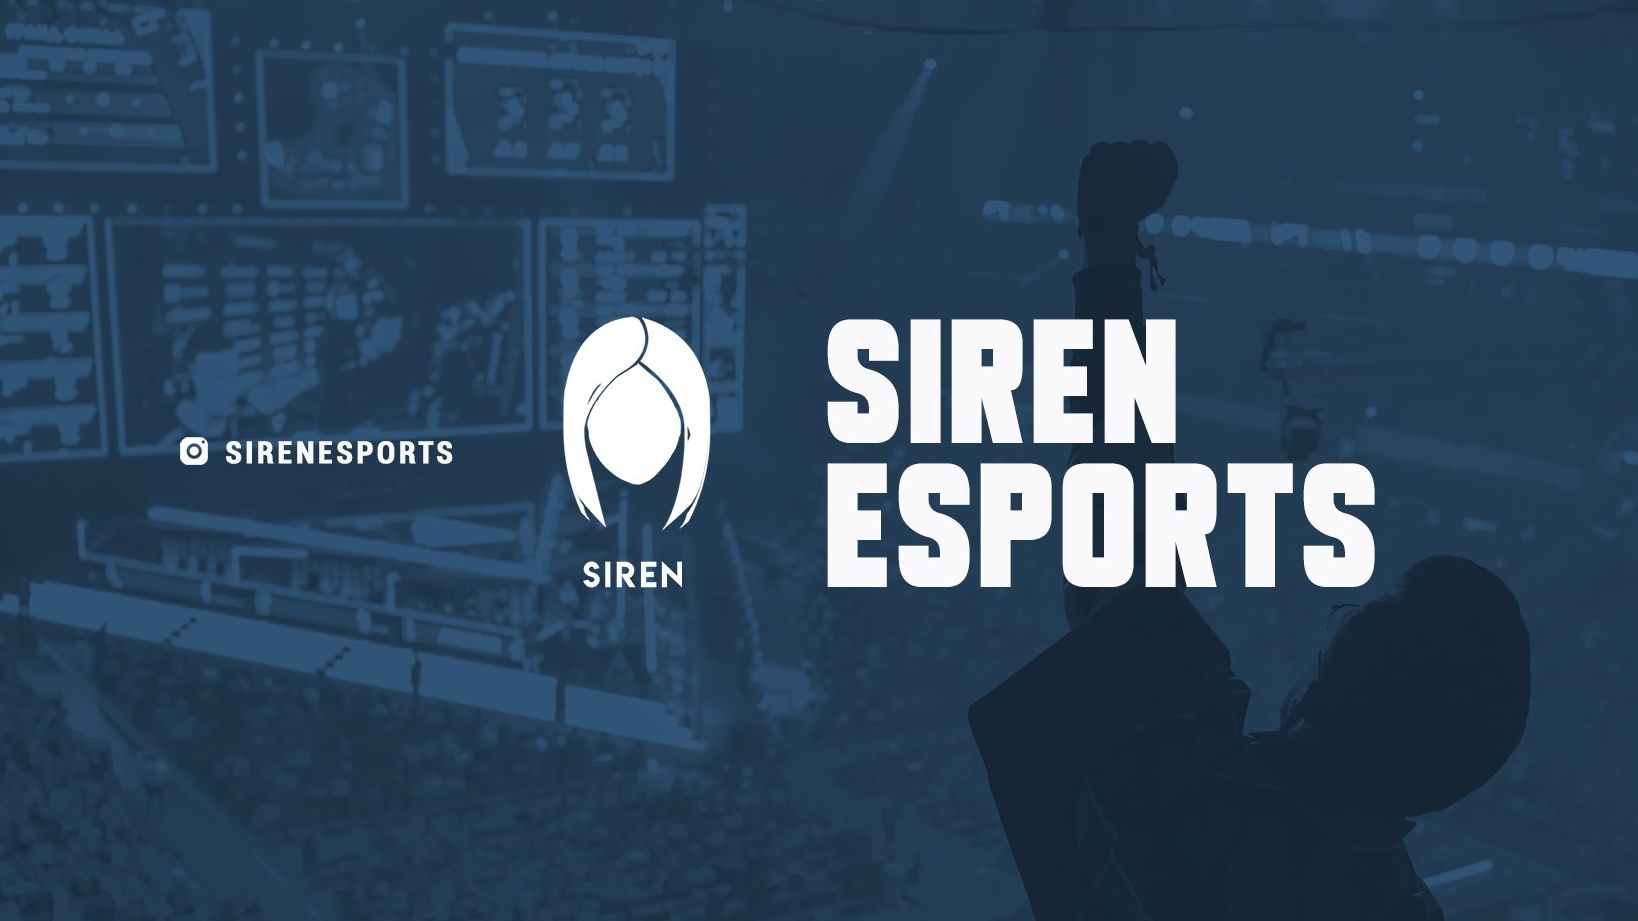 Siren Esports